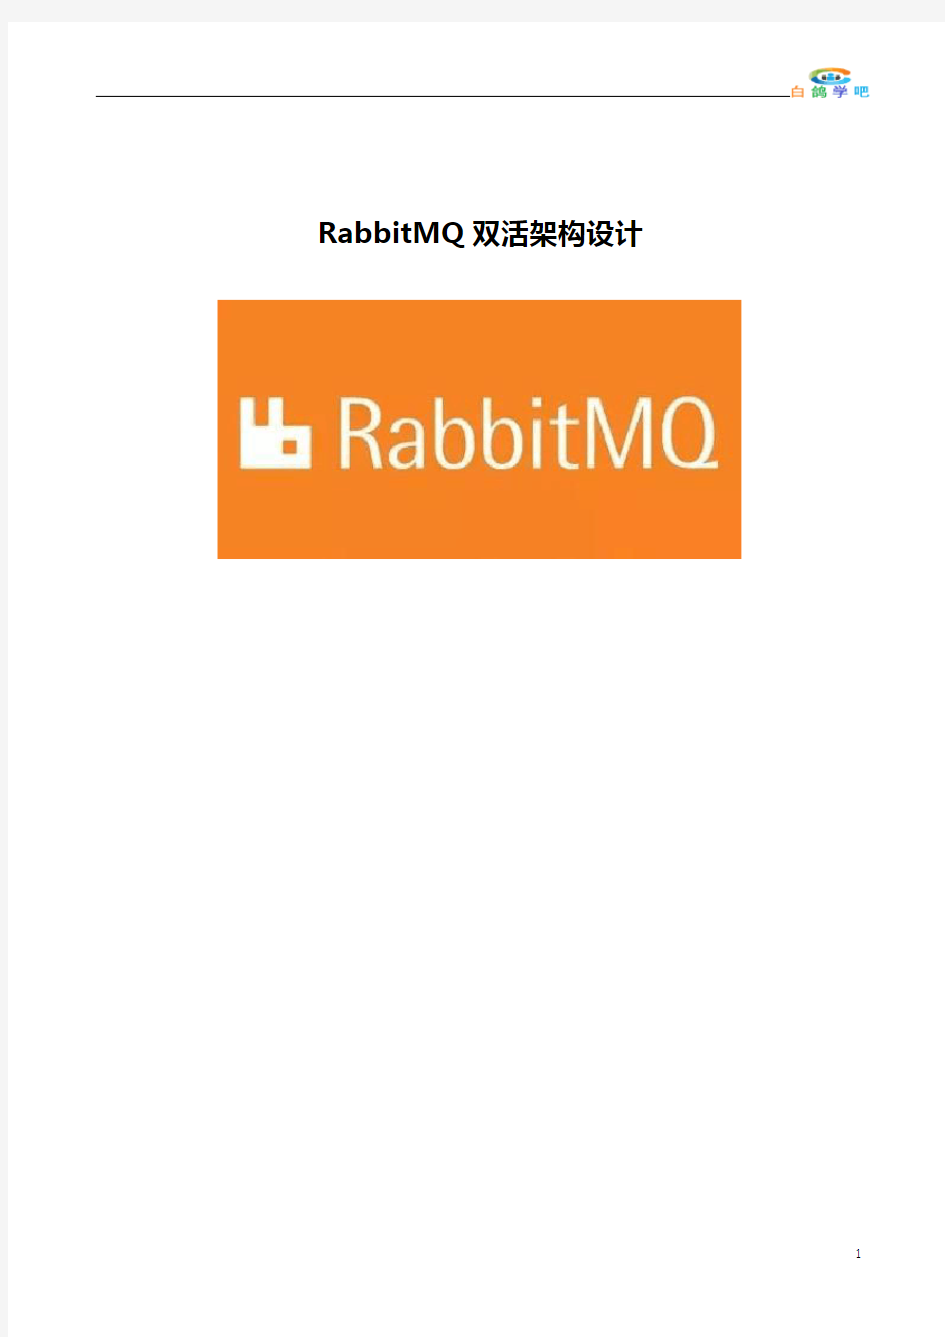 RabbitMQ双活架构设计